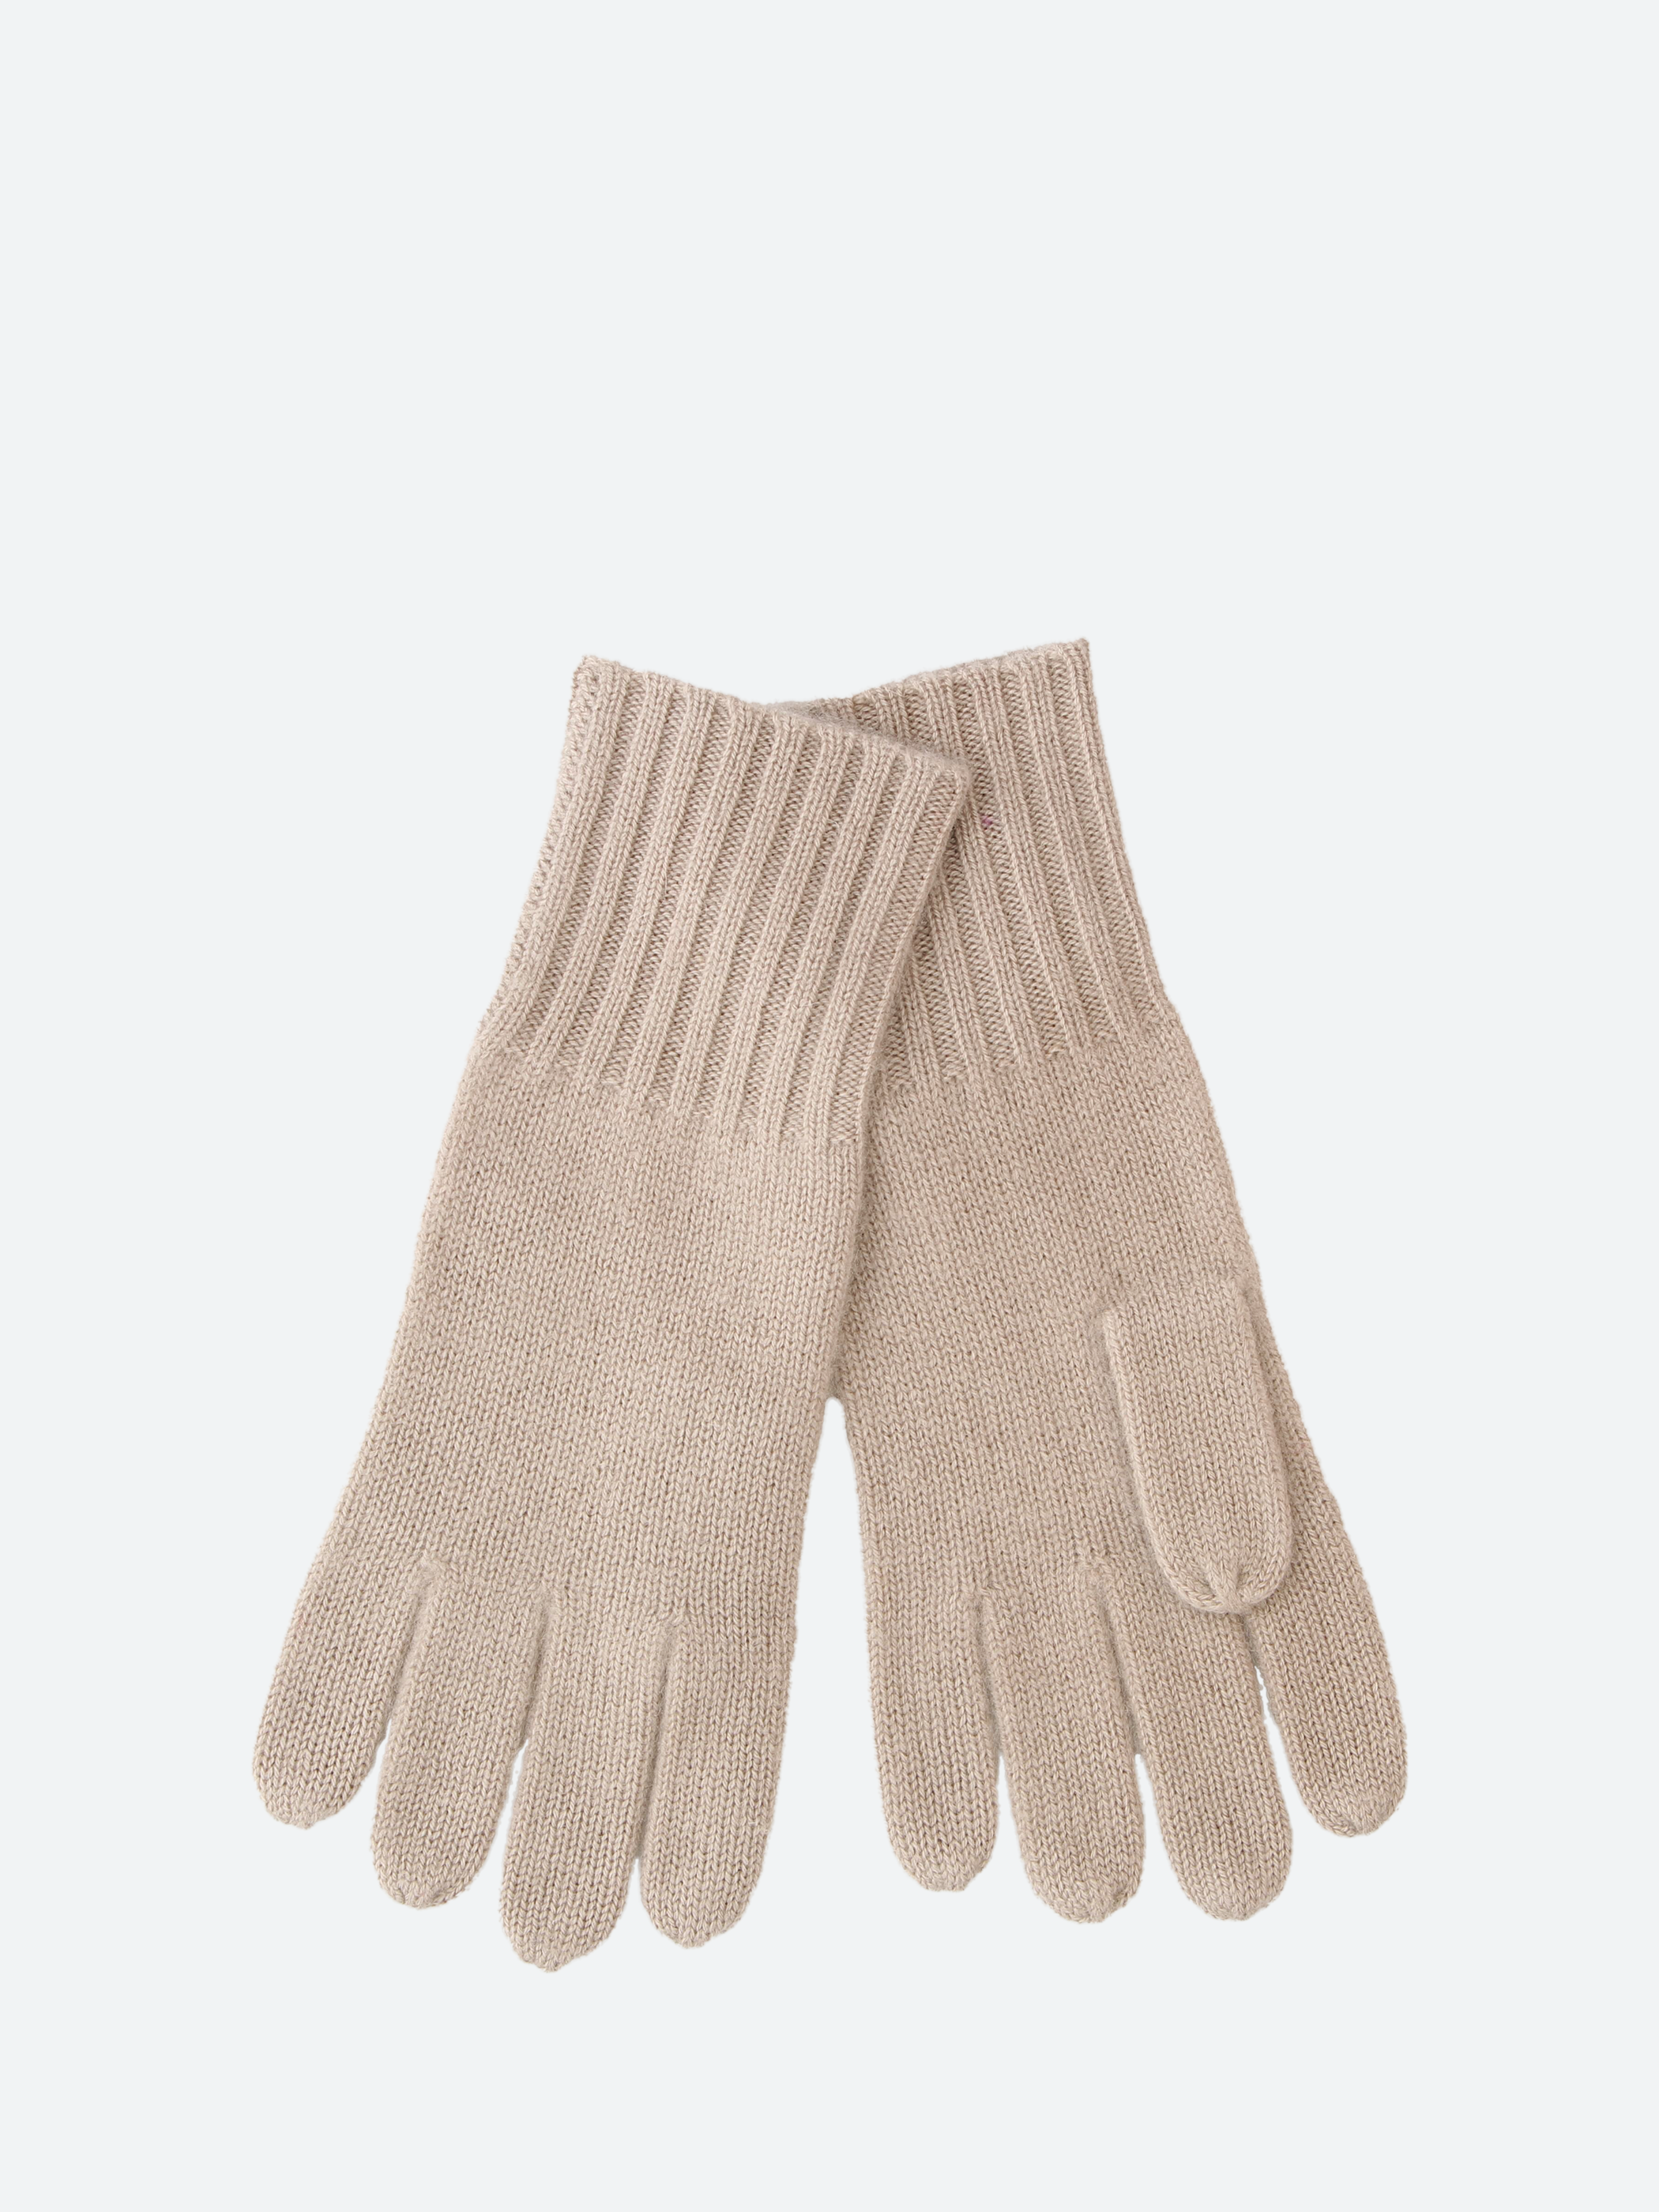 Cashmere Gloves